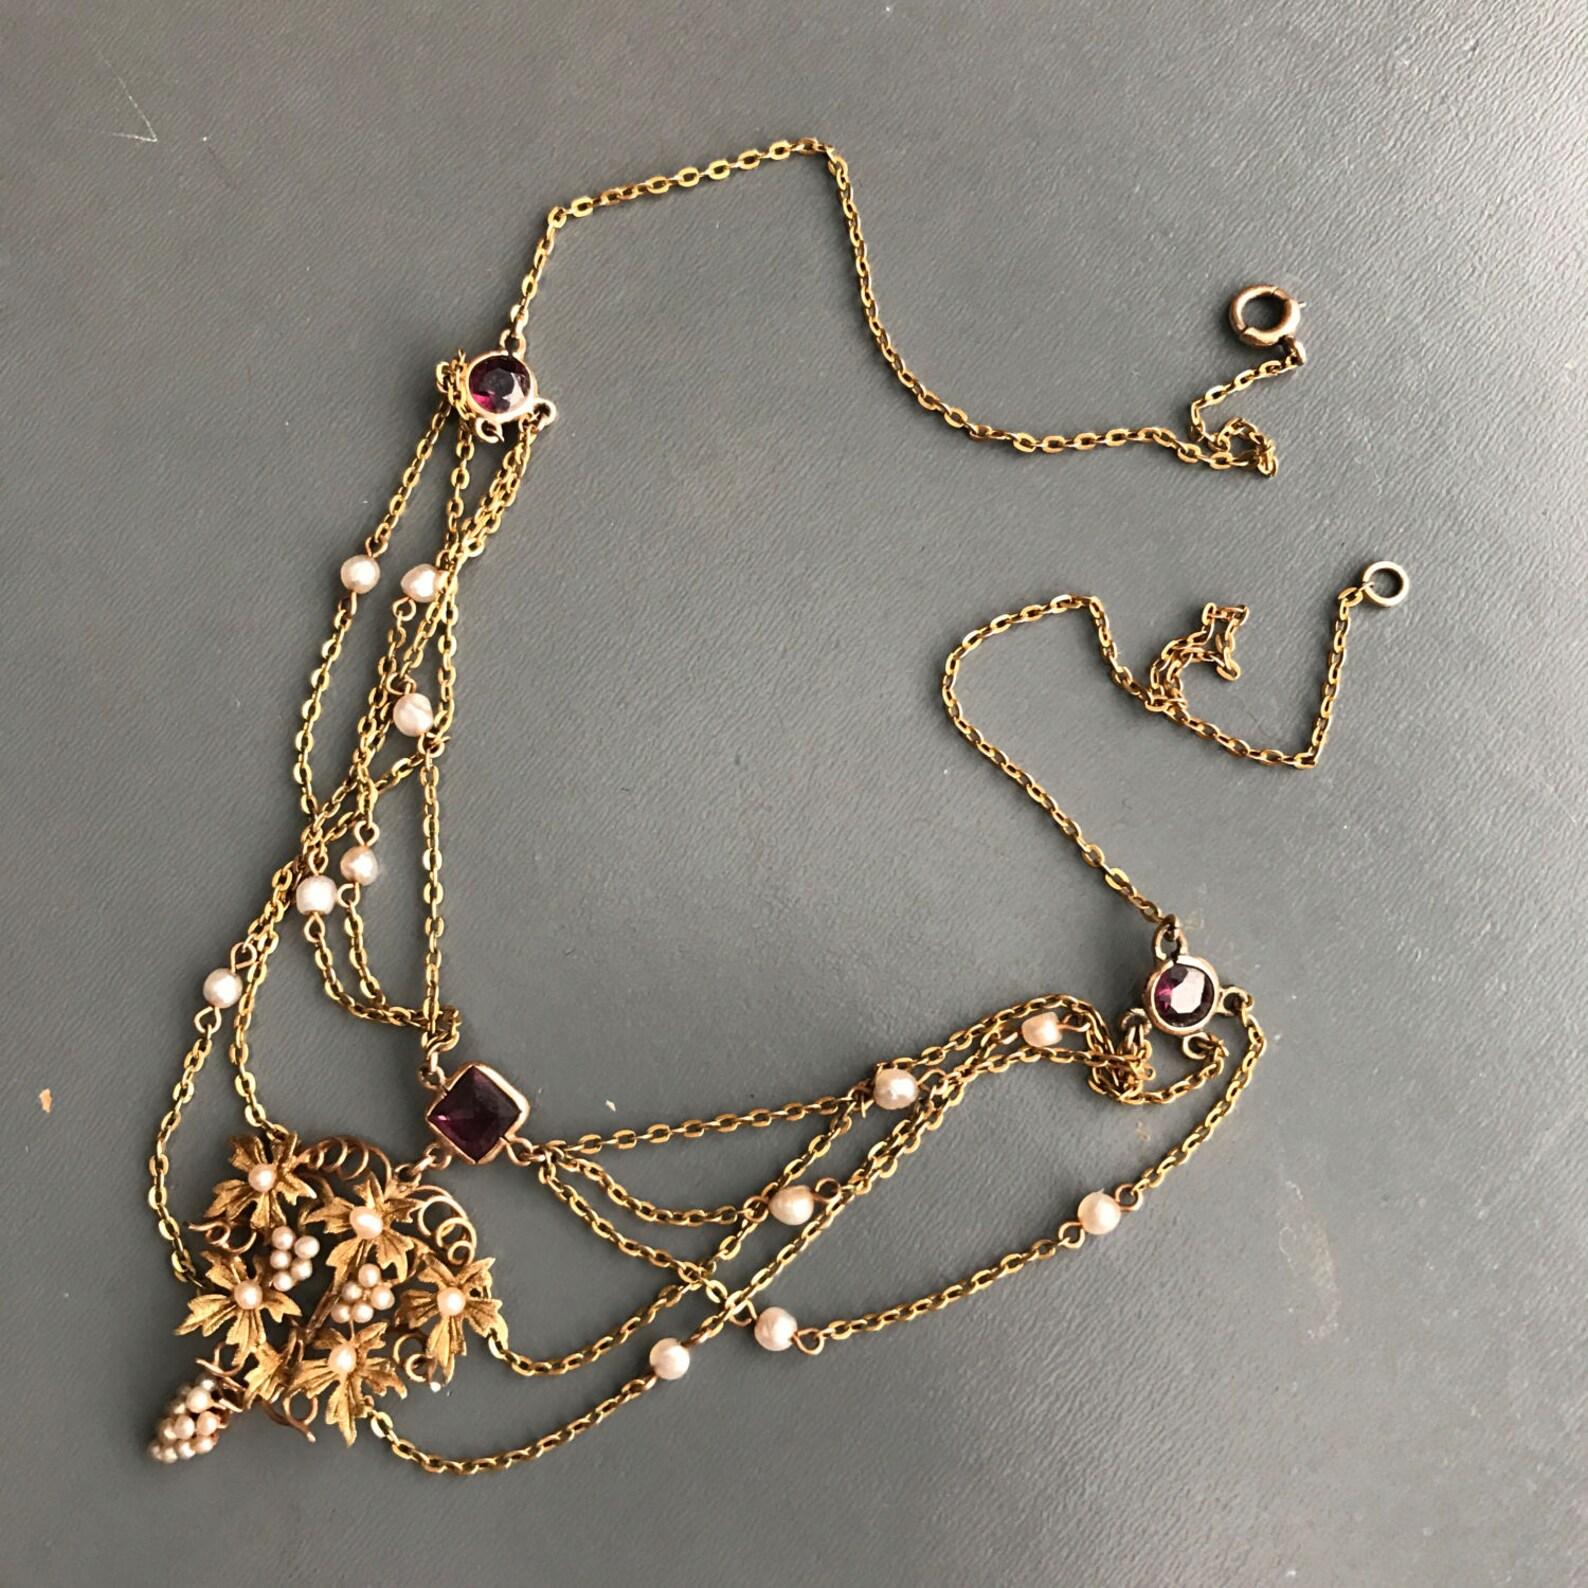 Antike Jugendstil-Halskette mit 10kt Gold und echten Perlen.
Zentrale Anhänger verfügt über eine detaillierte ..sehr fein gemacht Gold und Samen Perlen Trauben umgeben von goldenen Blättern, Halskette endet mit einem kreisförmigen Federverschluss